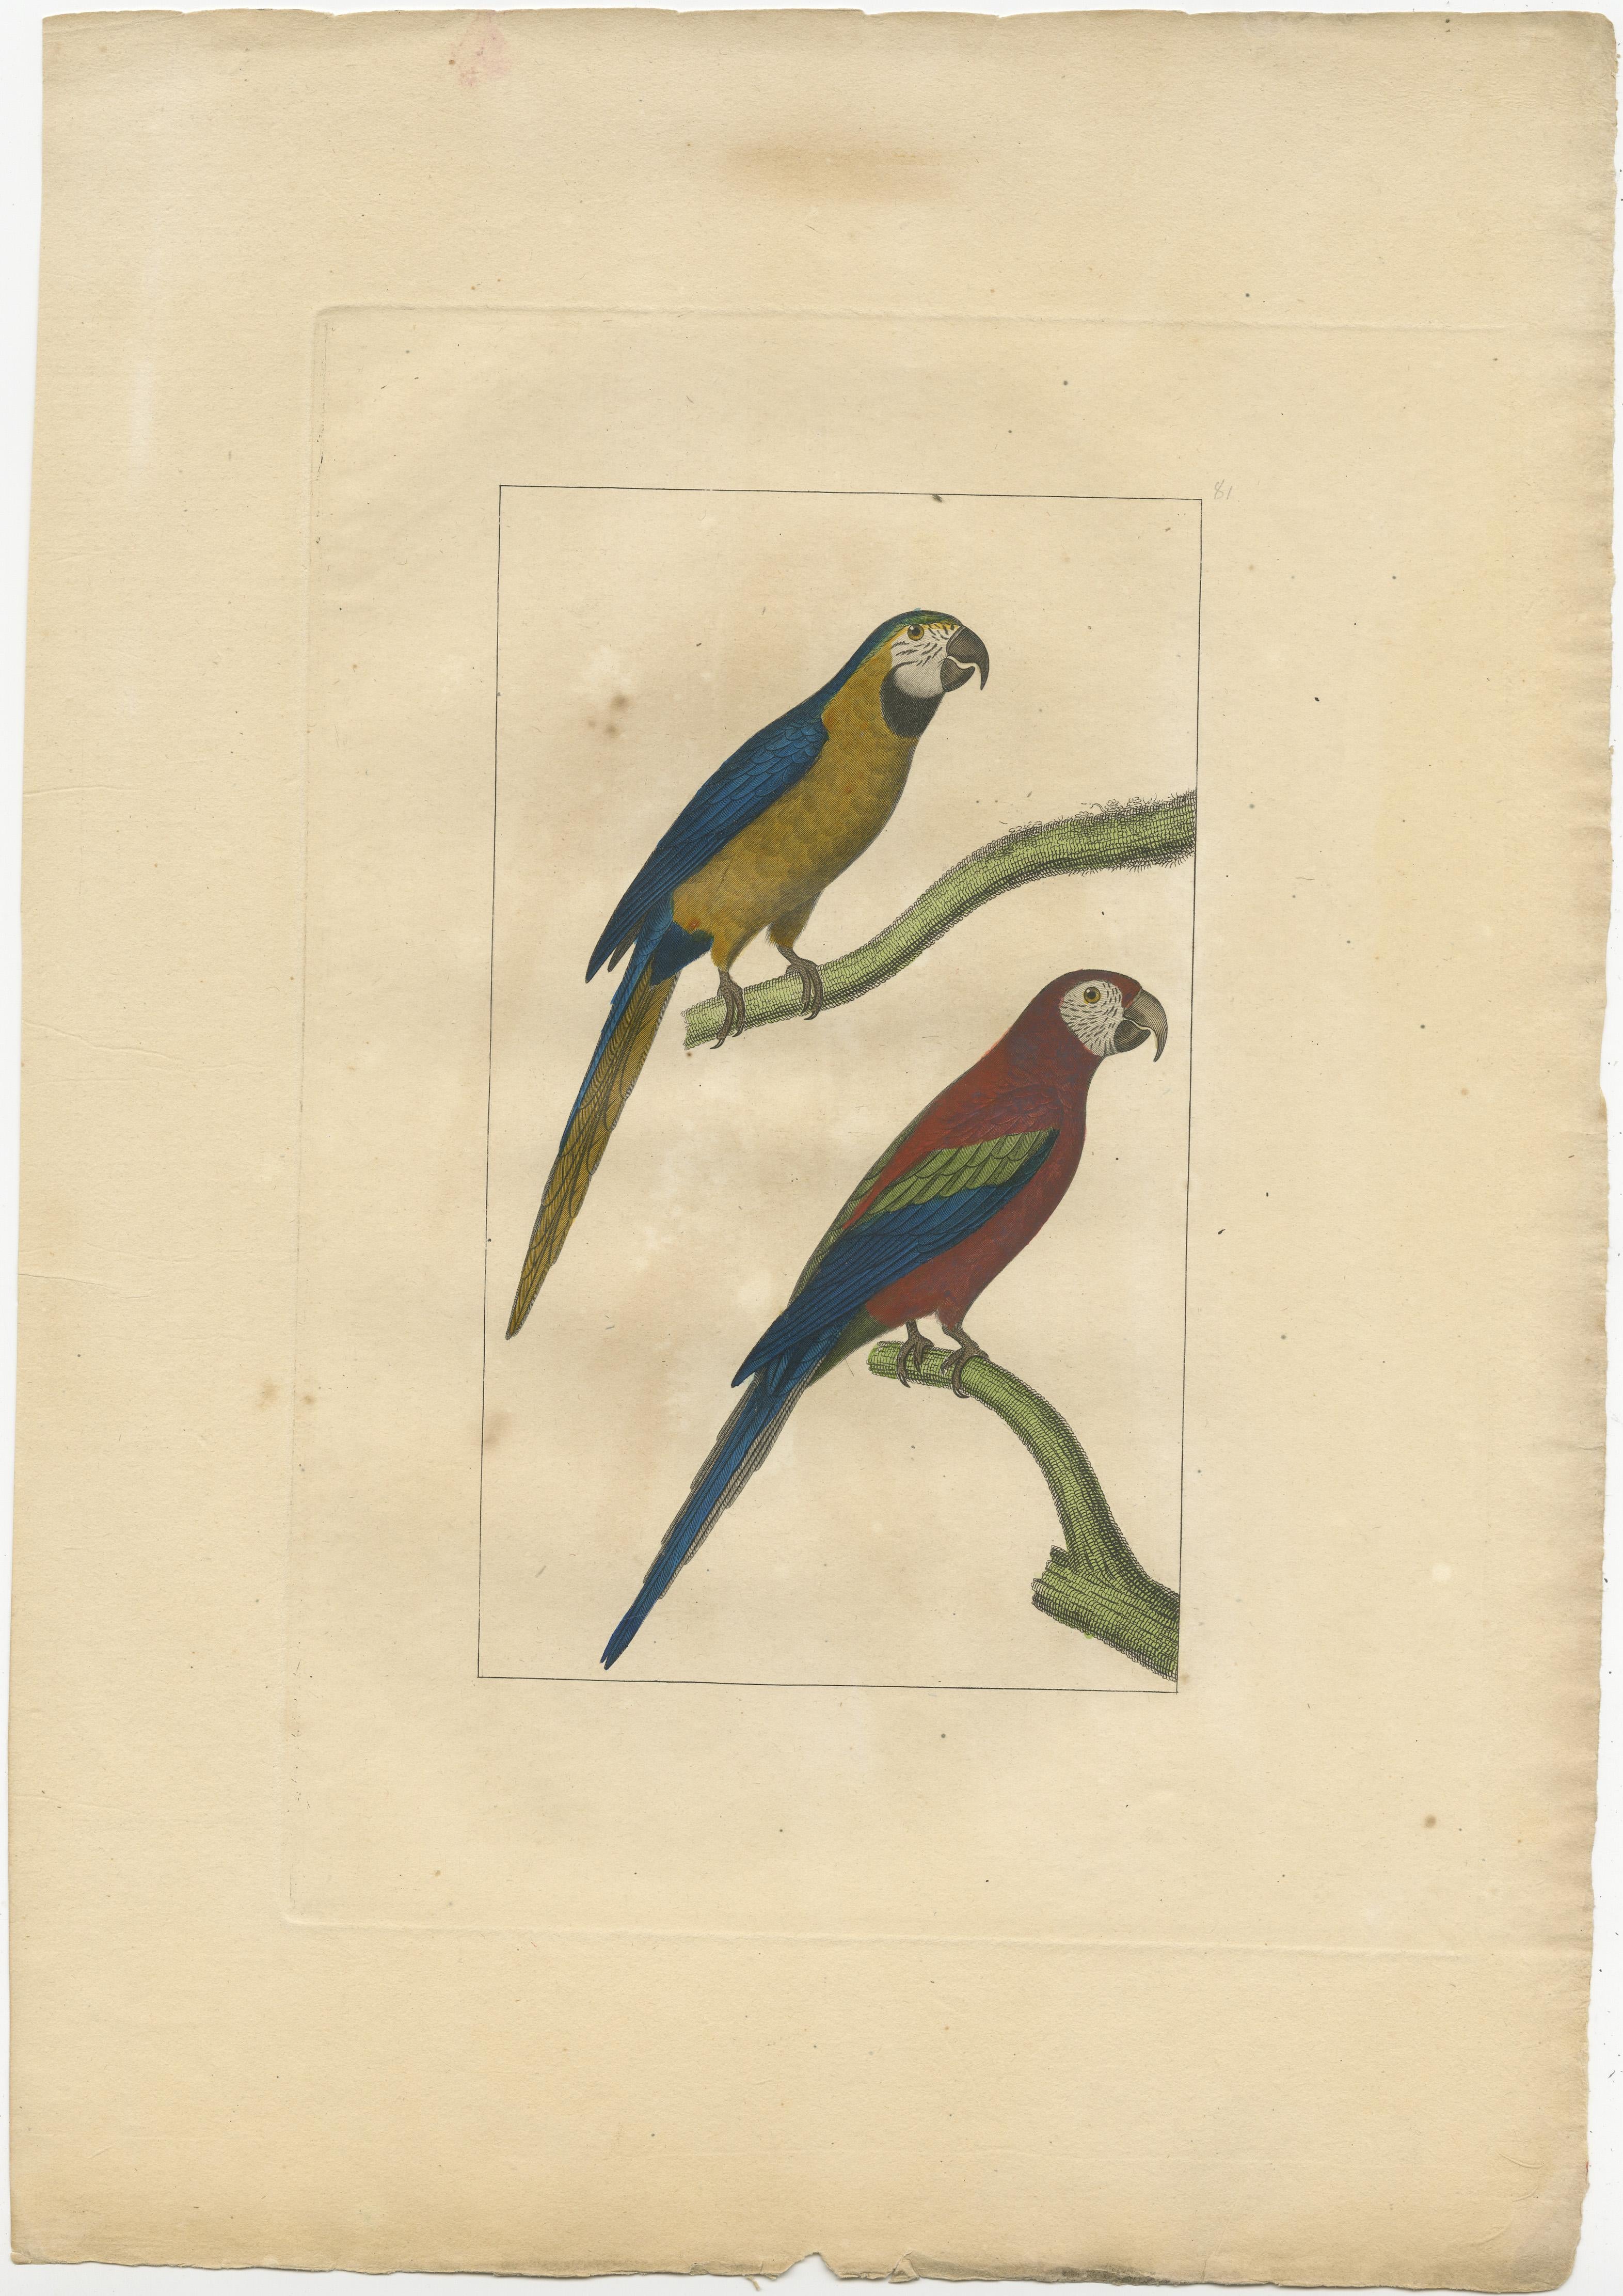 Gravure sans titre de perroquets. Source inconnue, à déterminer. Publié vers 1860.